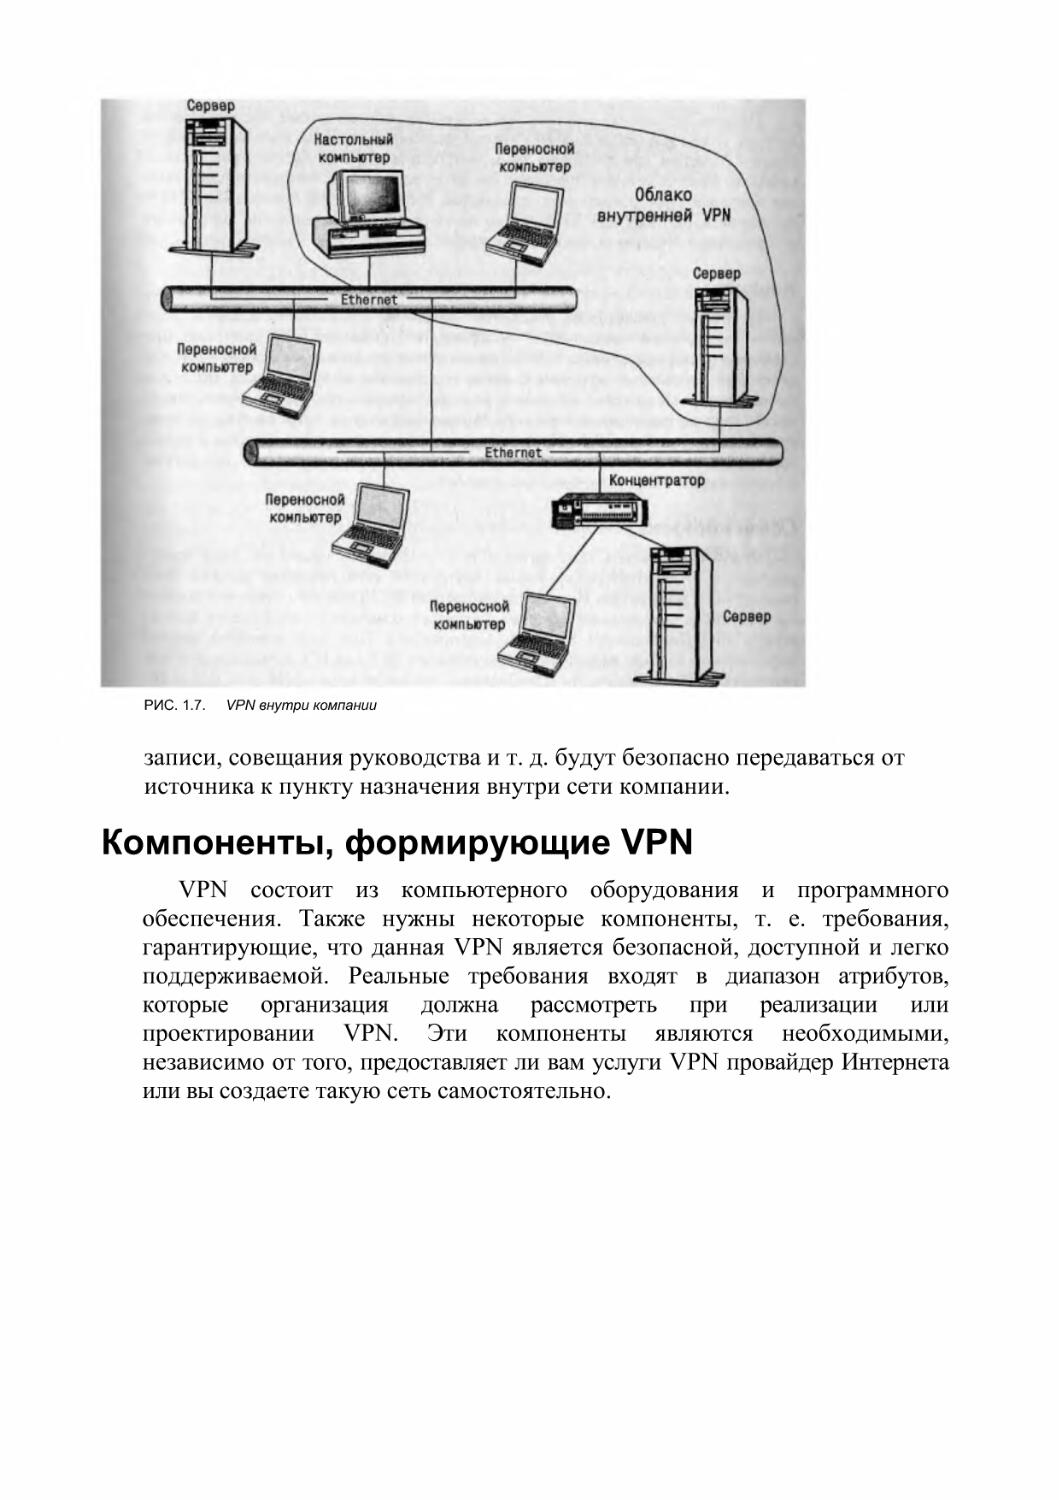 Компоненты, формирующие VPN